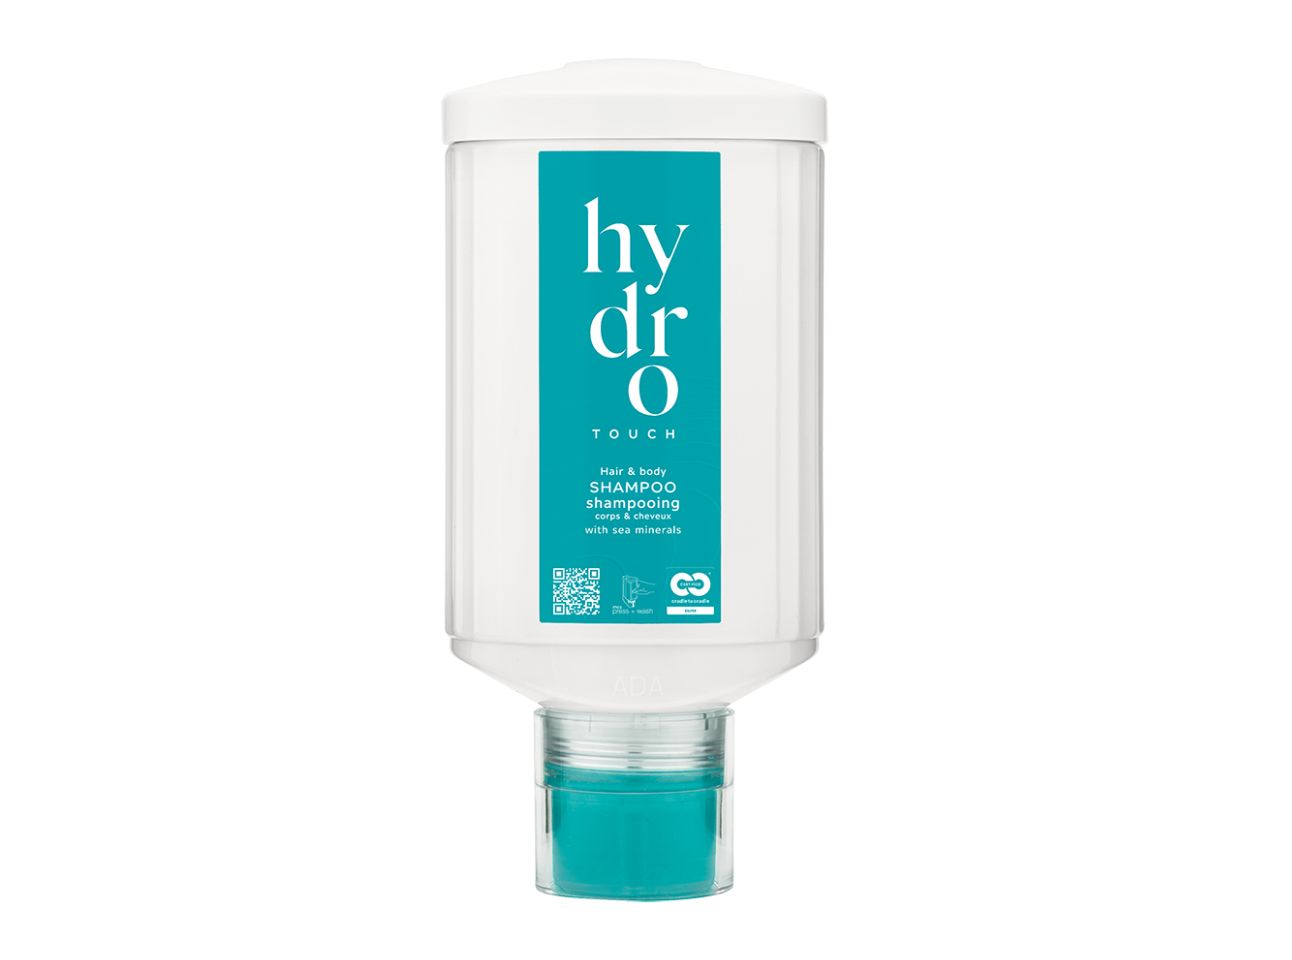 HYDRO TOUCH - Haar- und Bodyshampoo mit Meeresmineralien, press + wash Spender, 300 ml